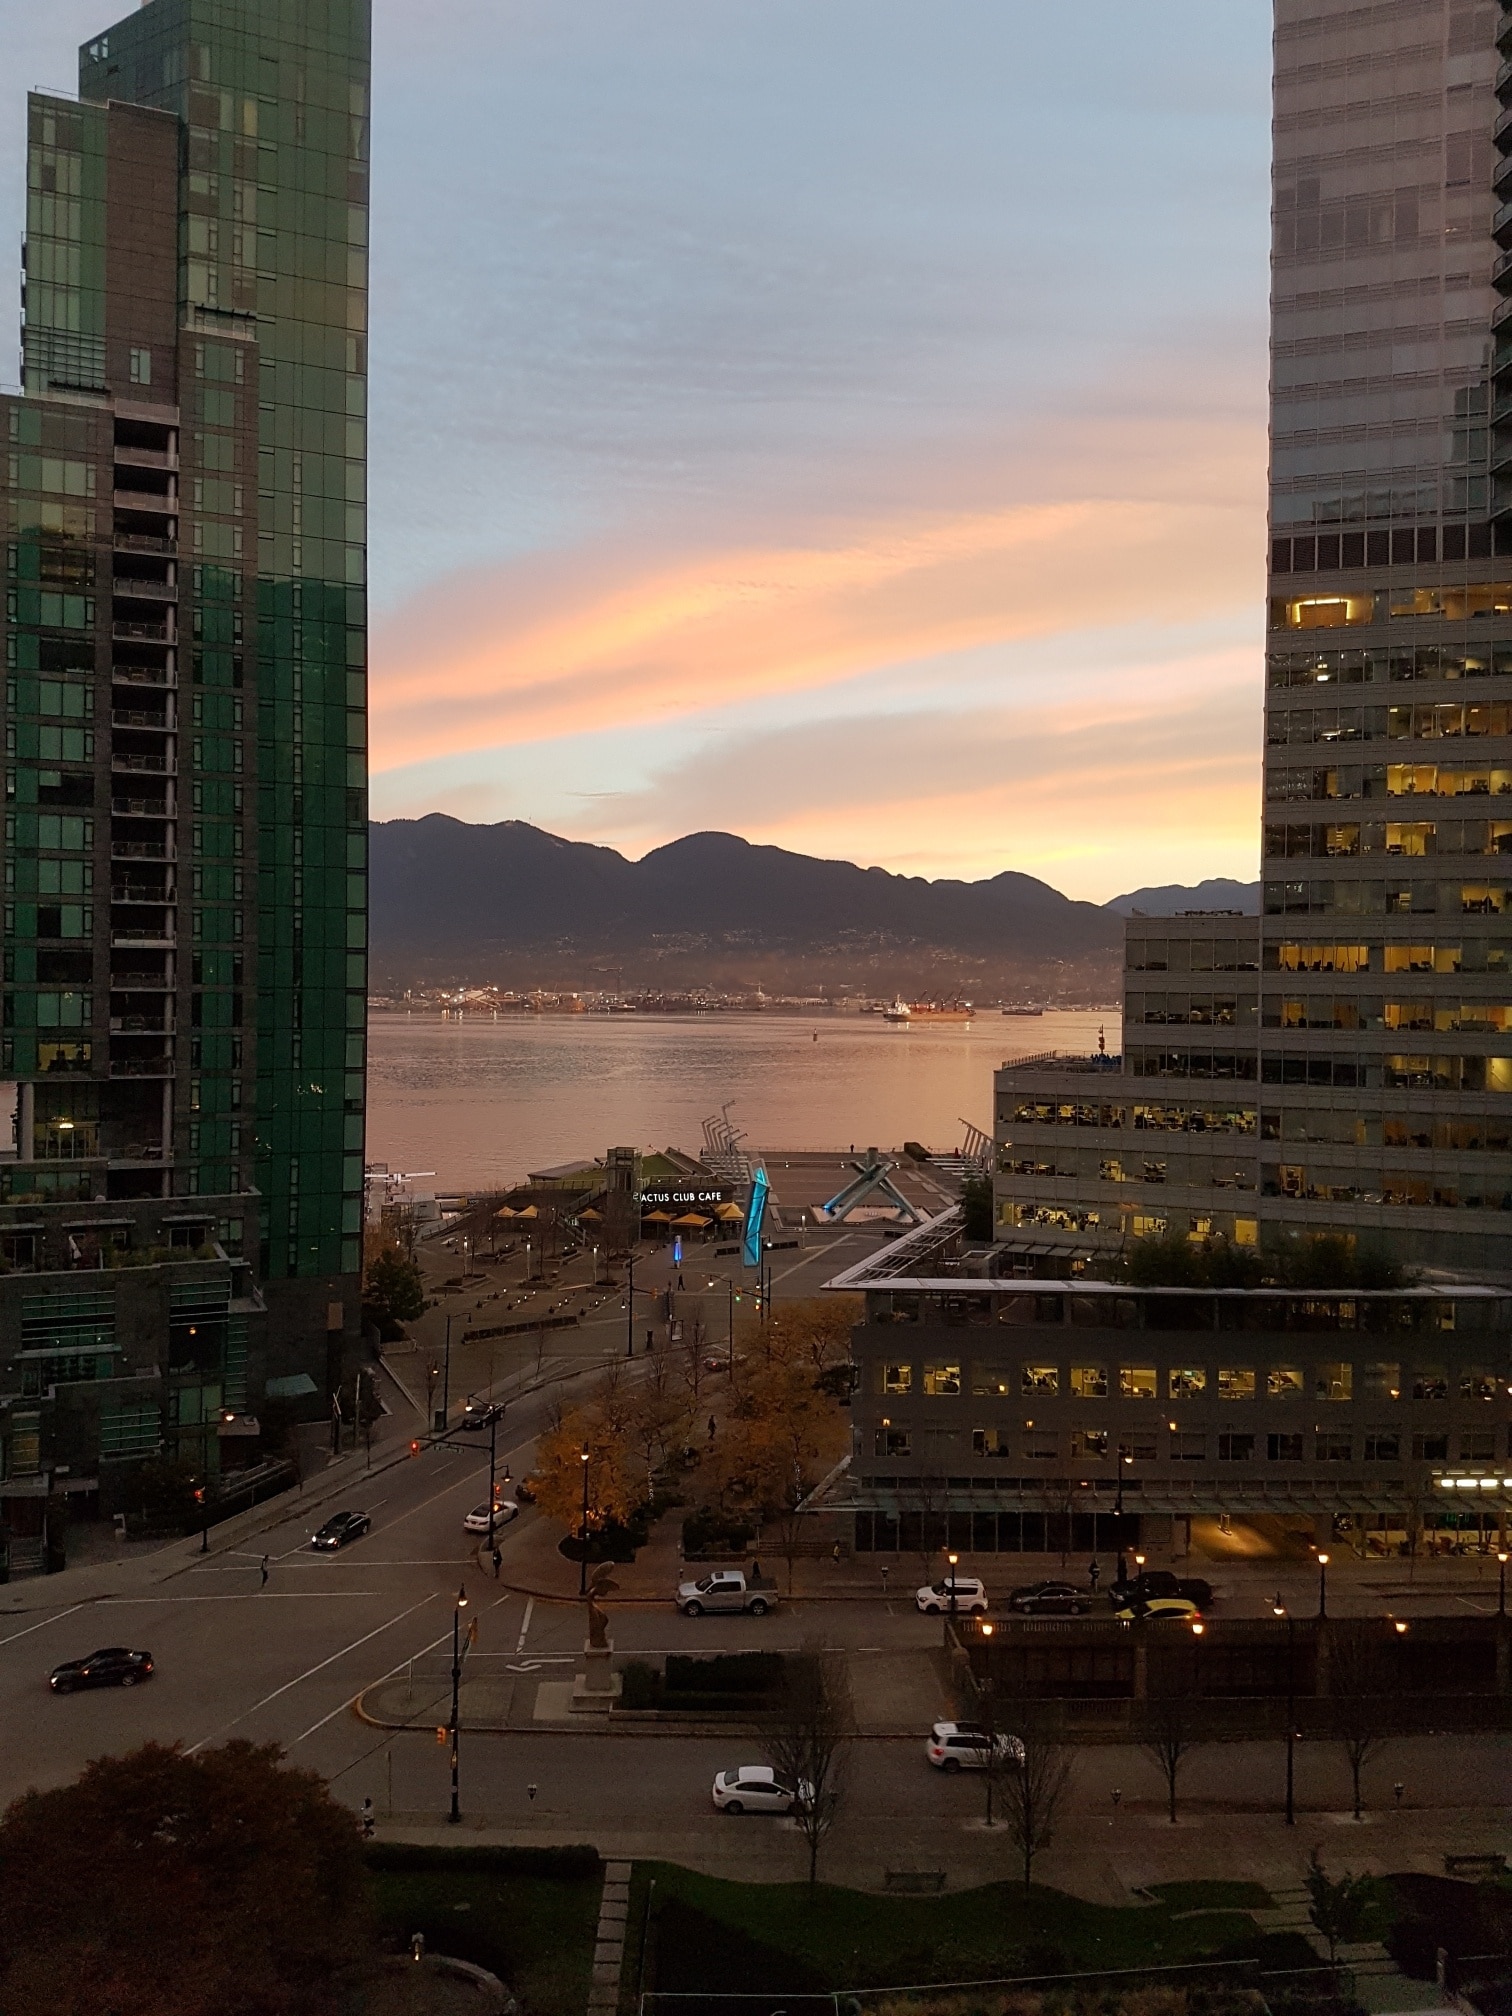 Morning sunrise over Jack Poole Plaza 

#lifeatexpedia #vancouver #pnw #sunrise